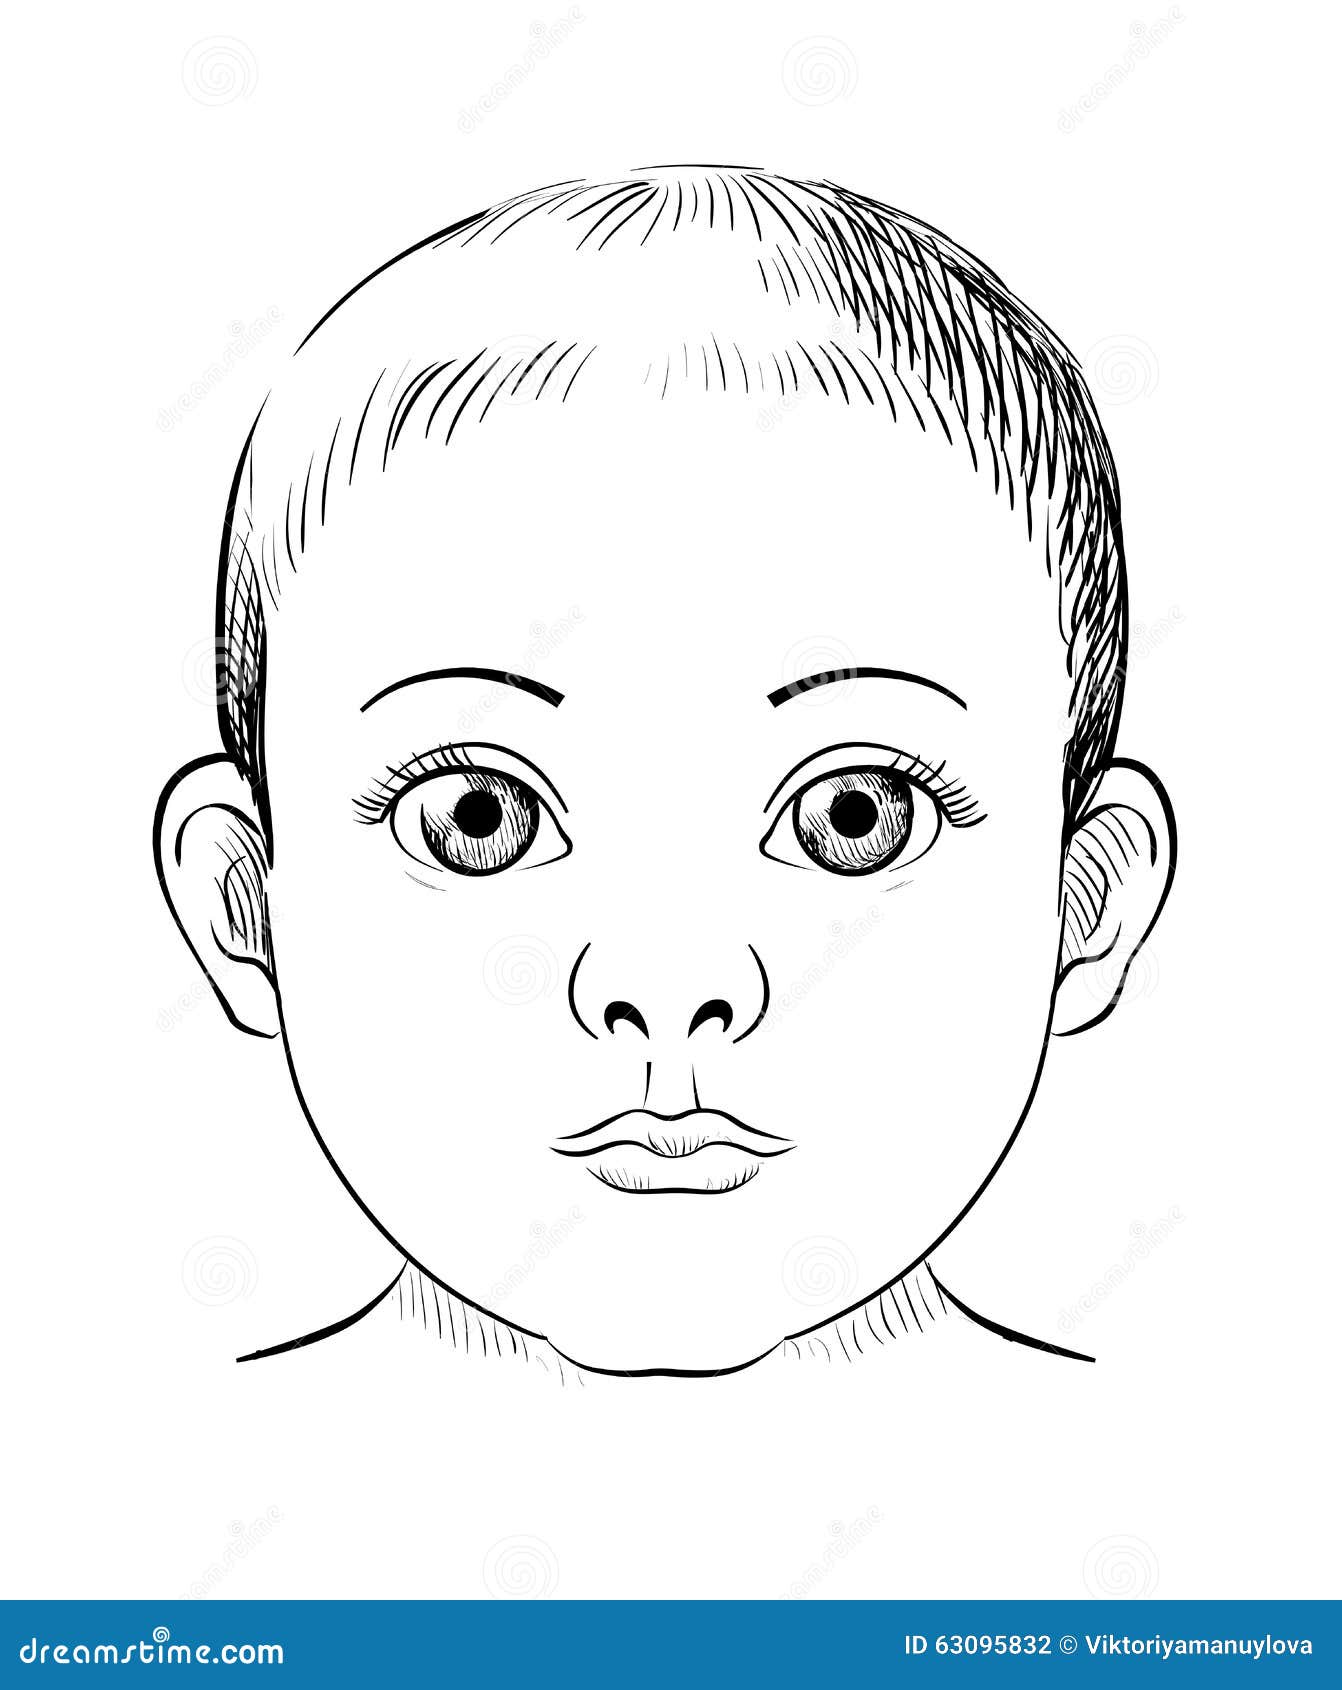 Sharma Jay - Baby Portrait Drawing - Sharma jay